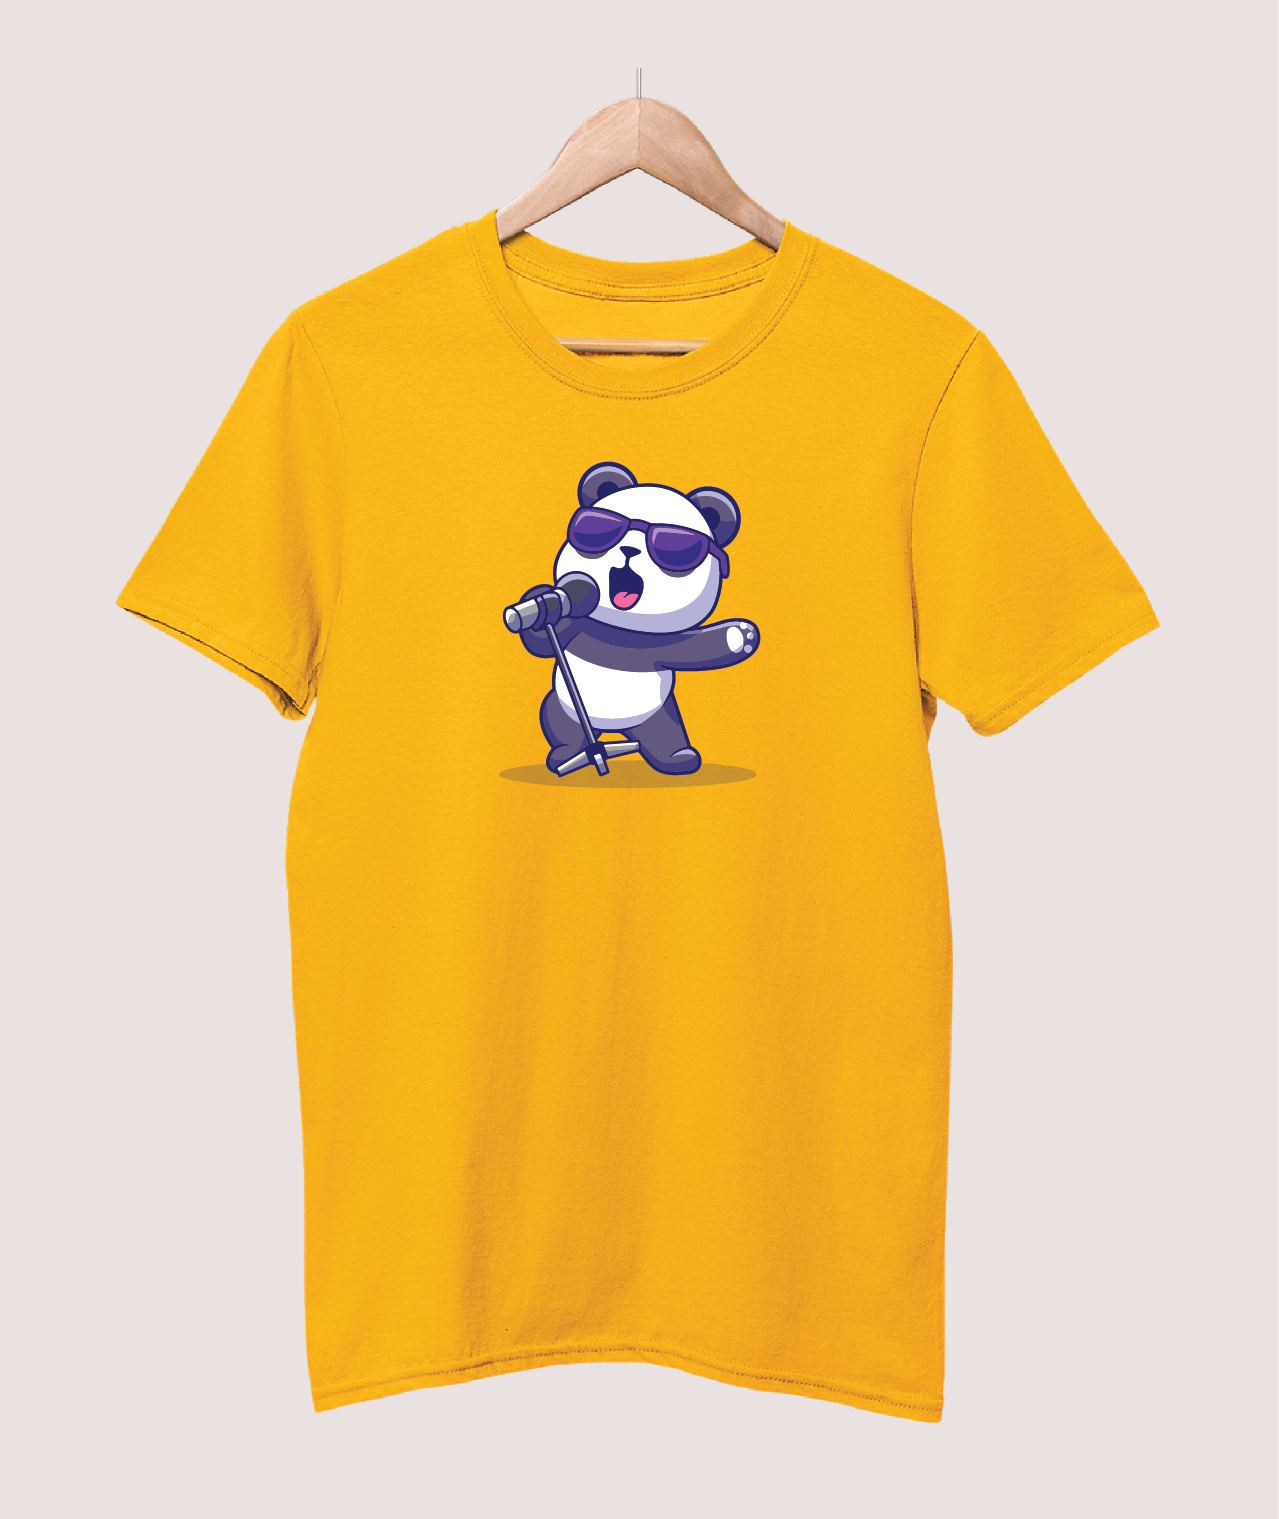 Singing Panda T-shirt